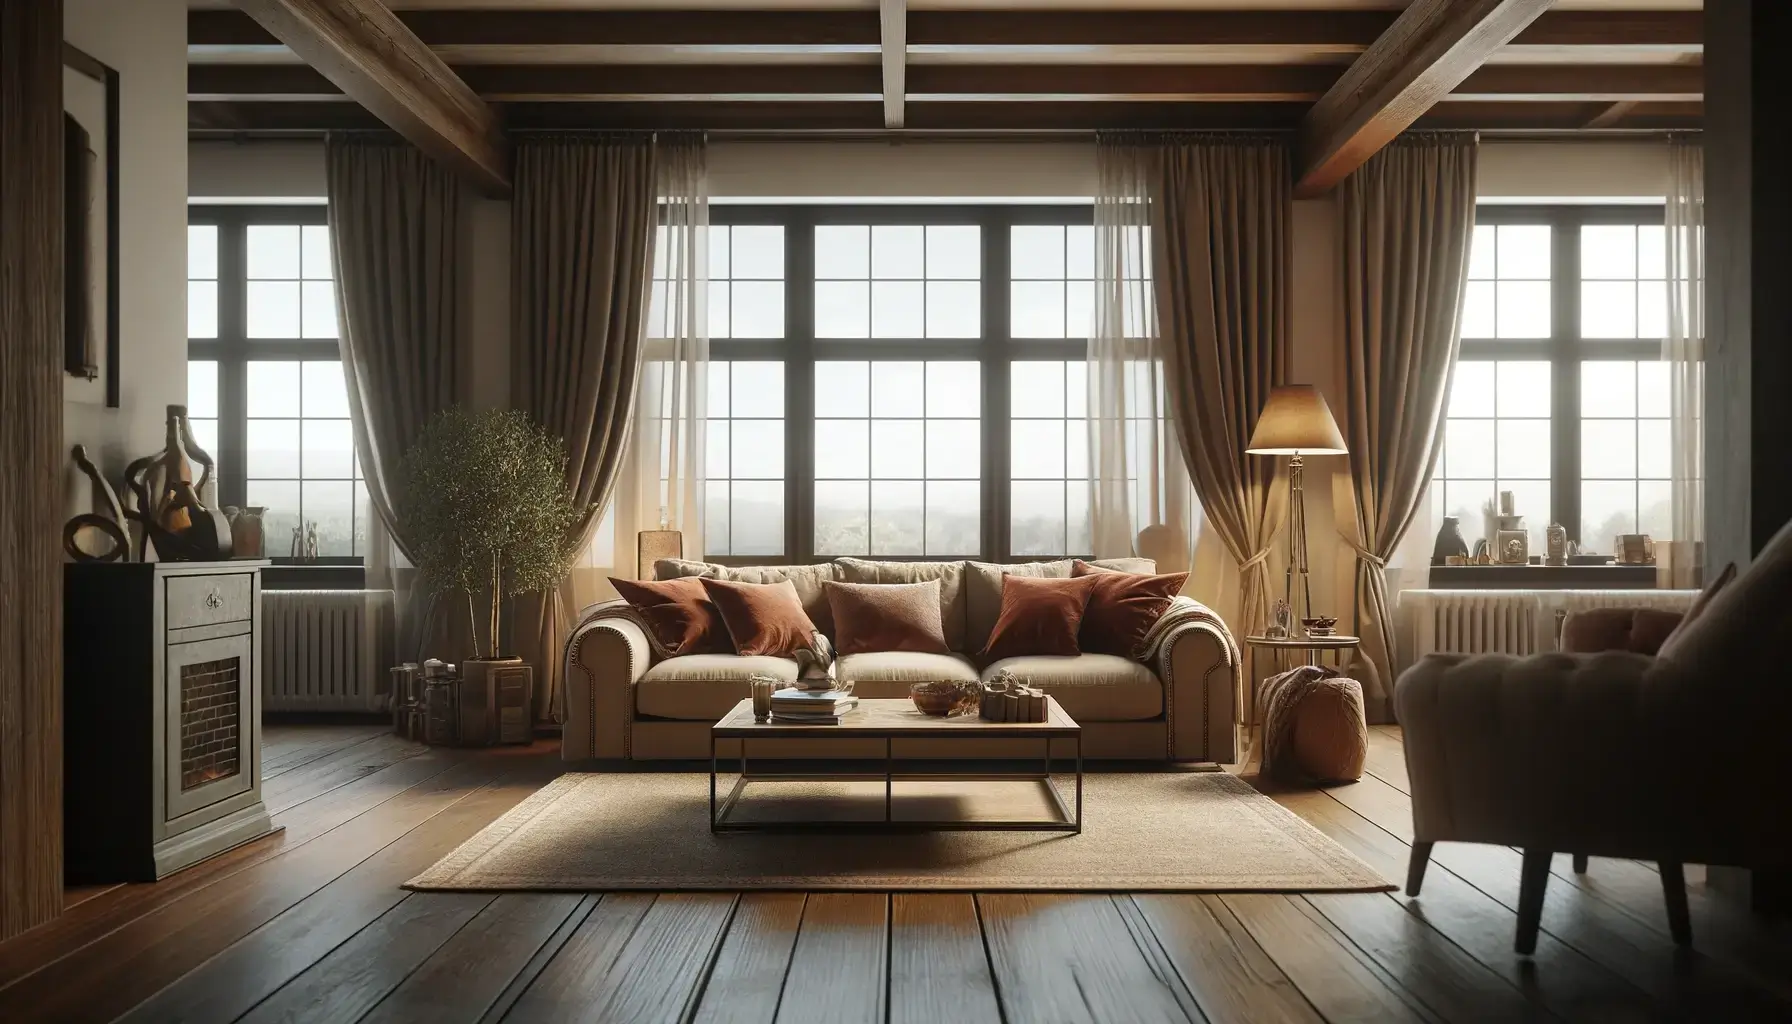 Wohnzimmerdesign – 8 schöne Inspirationen